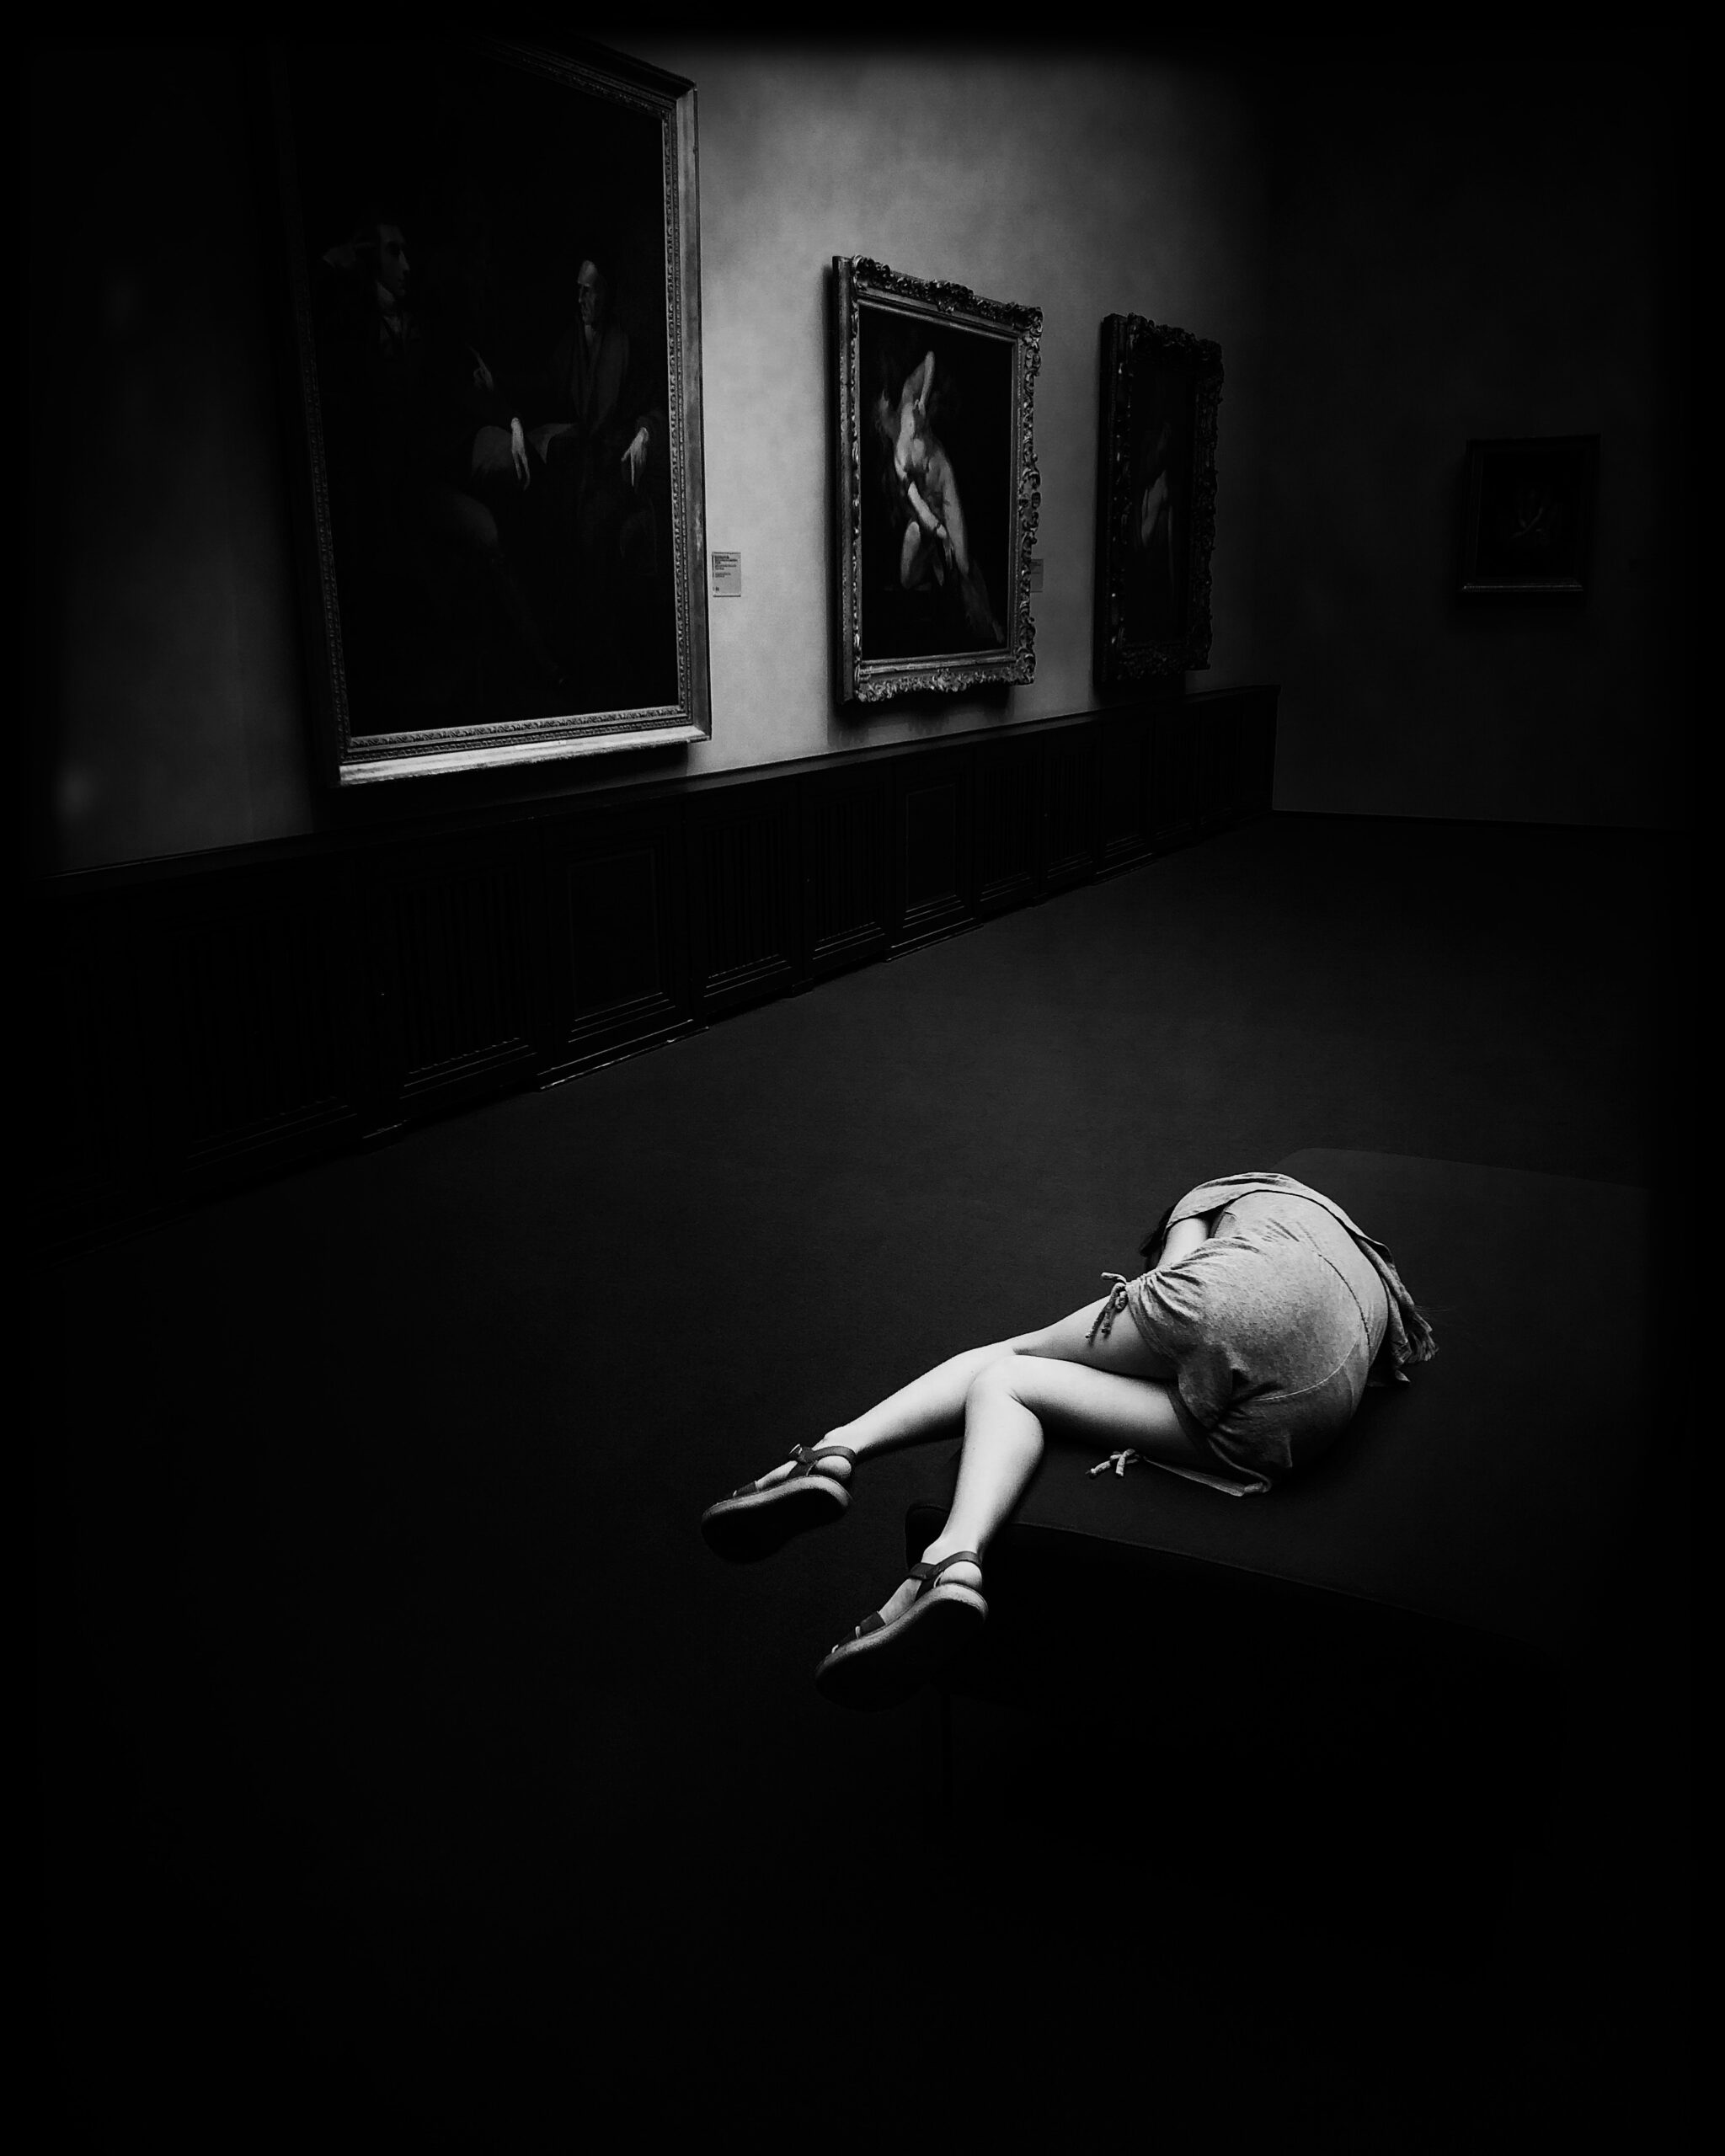 Museum Fatigue